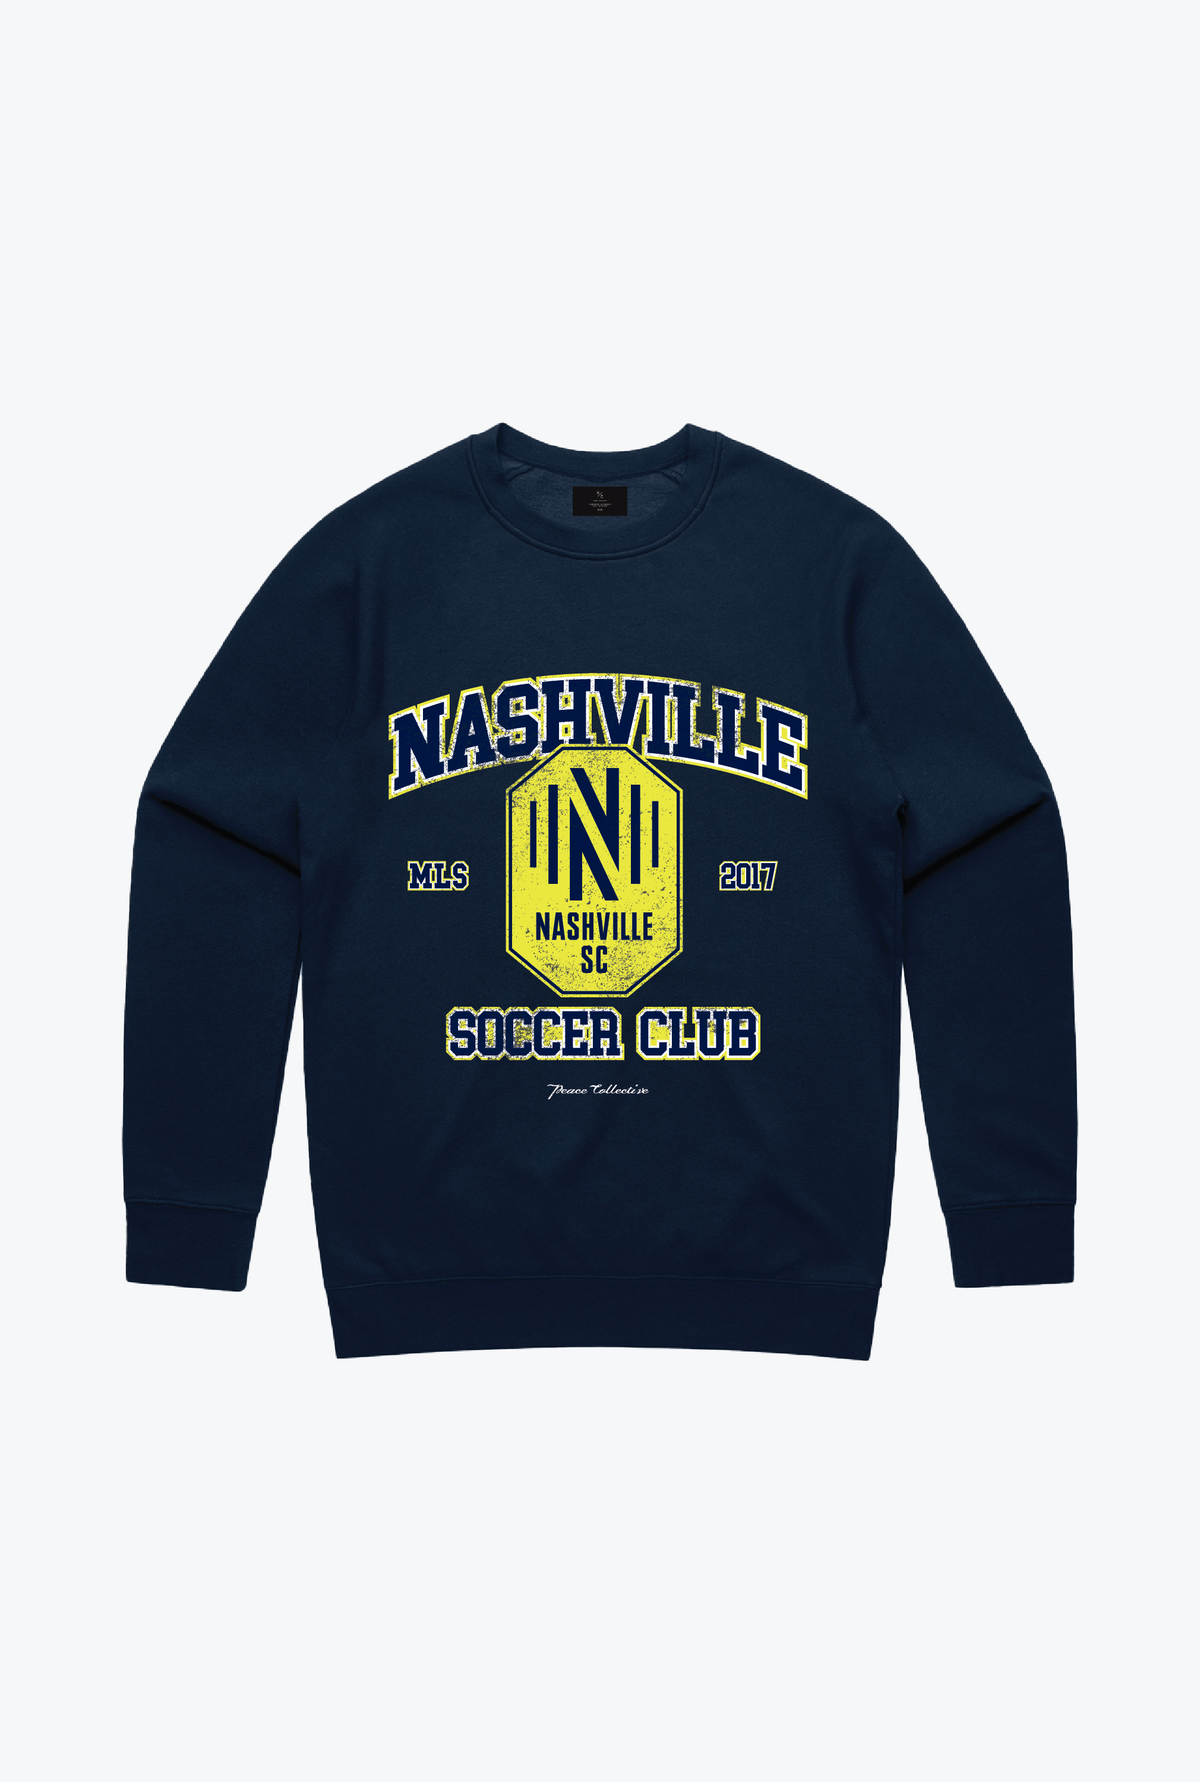 Nashville SC Vintage Washed Crewneck - Navy